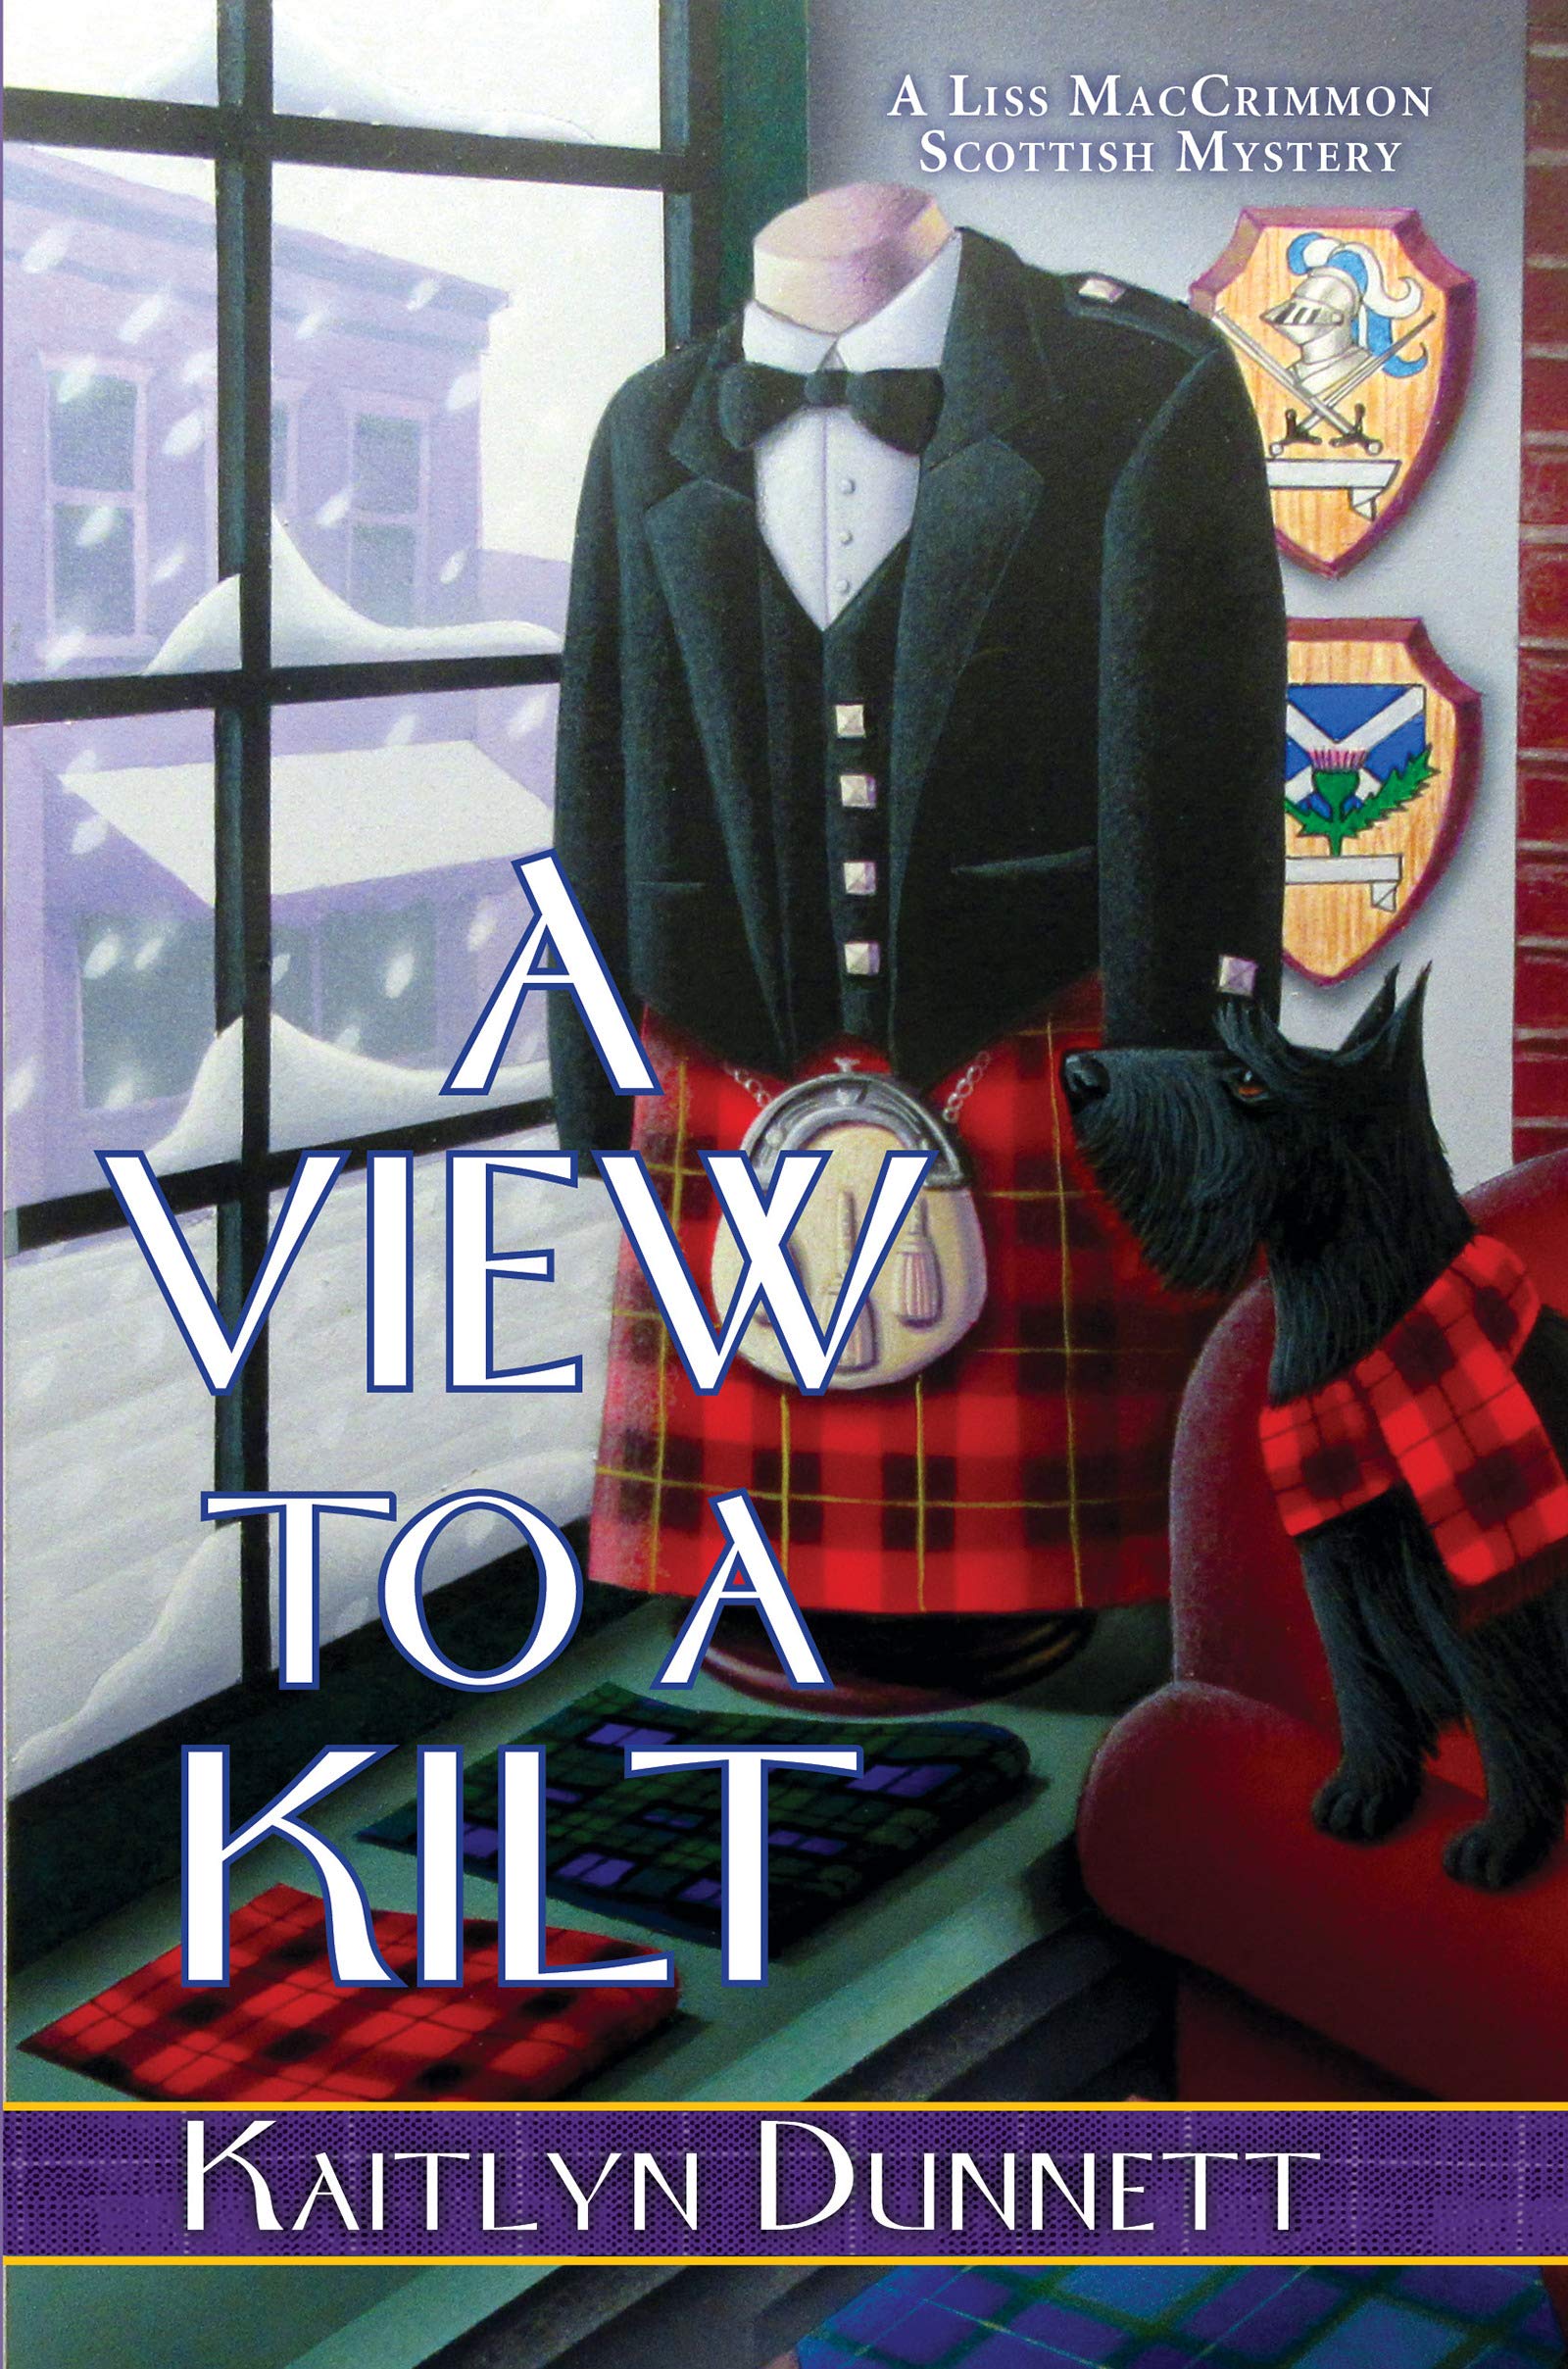 View to a Kilt | Kaitlyn Dunnett